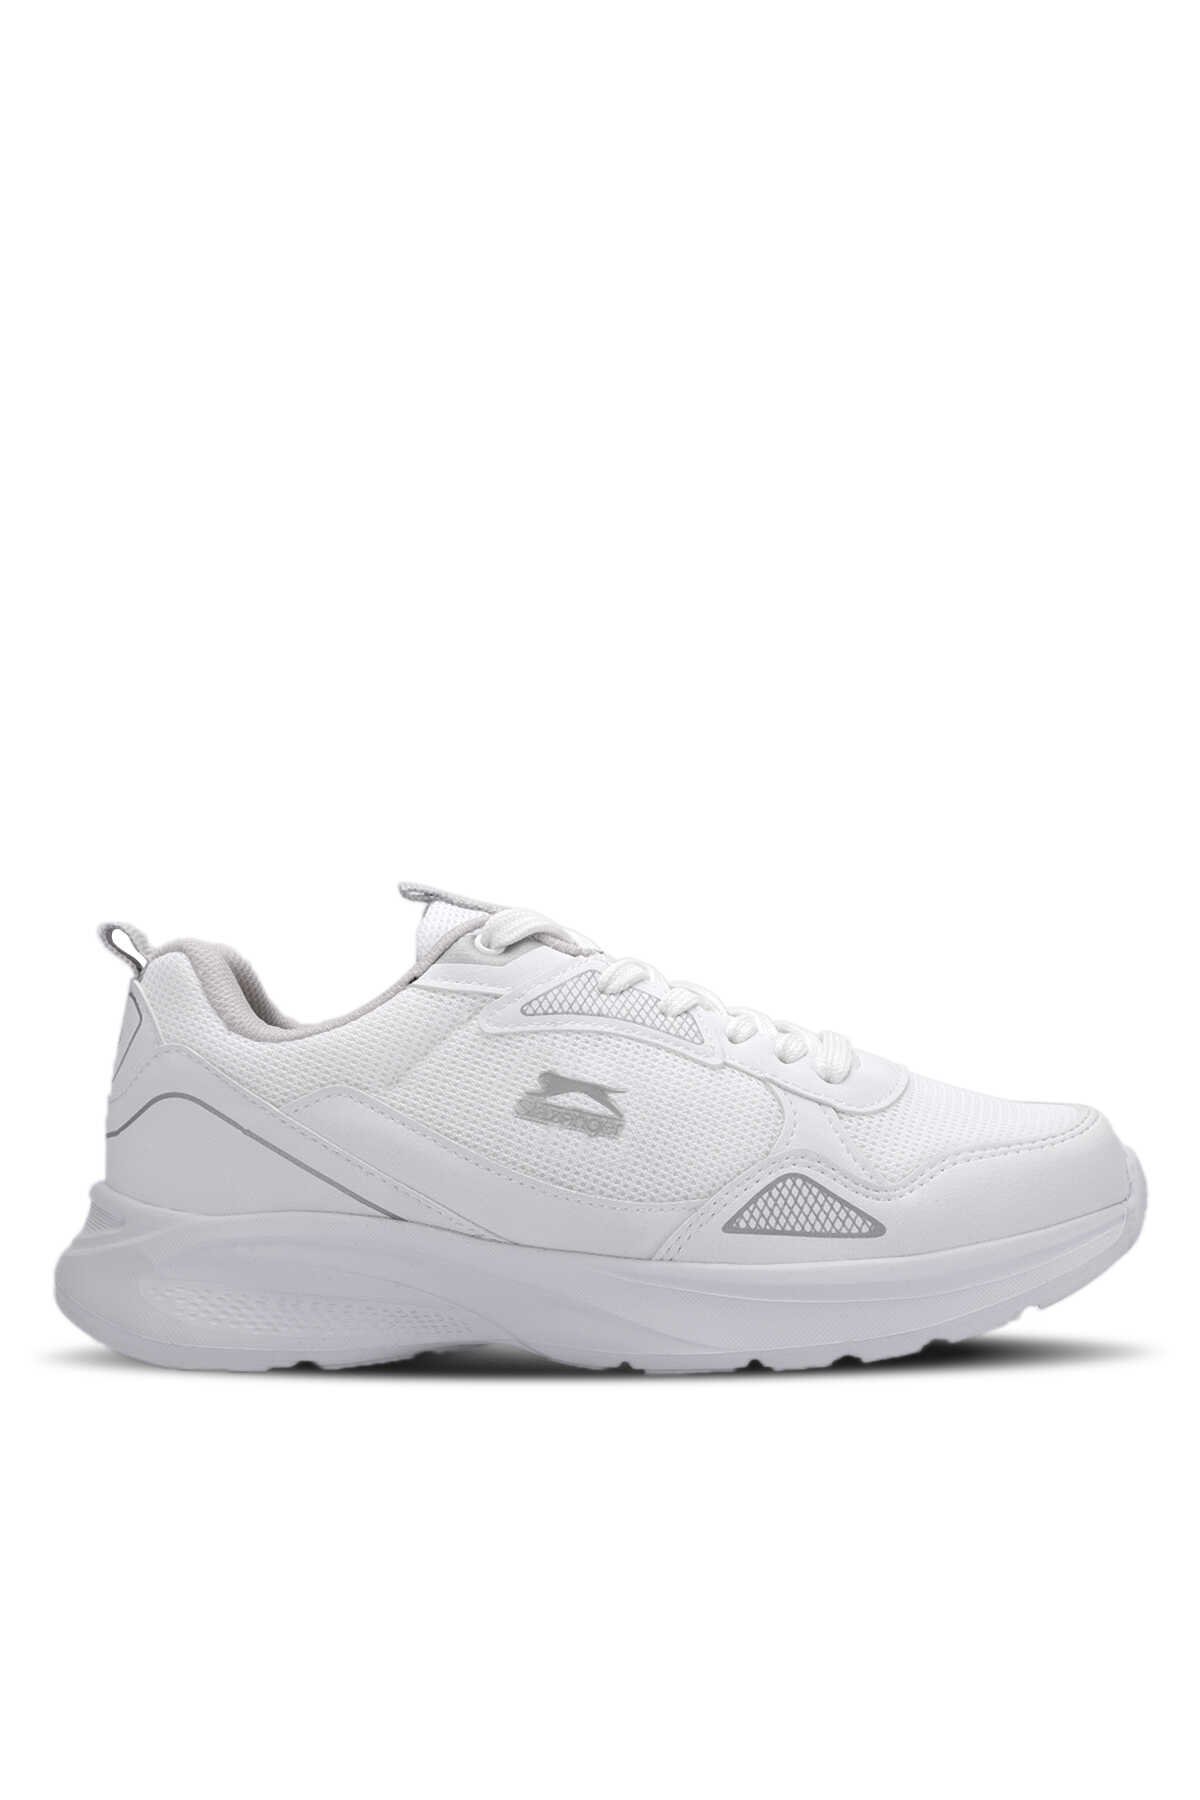 Slazenger - Slazenger GAIN GA Sneaker Erkek Ayakkabı Beyaz / Gri